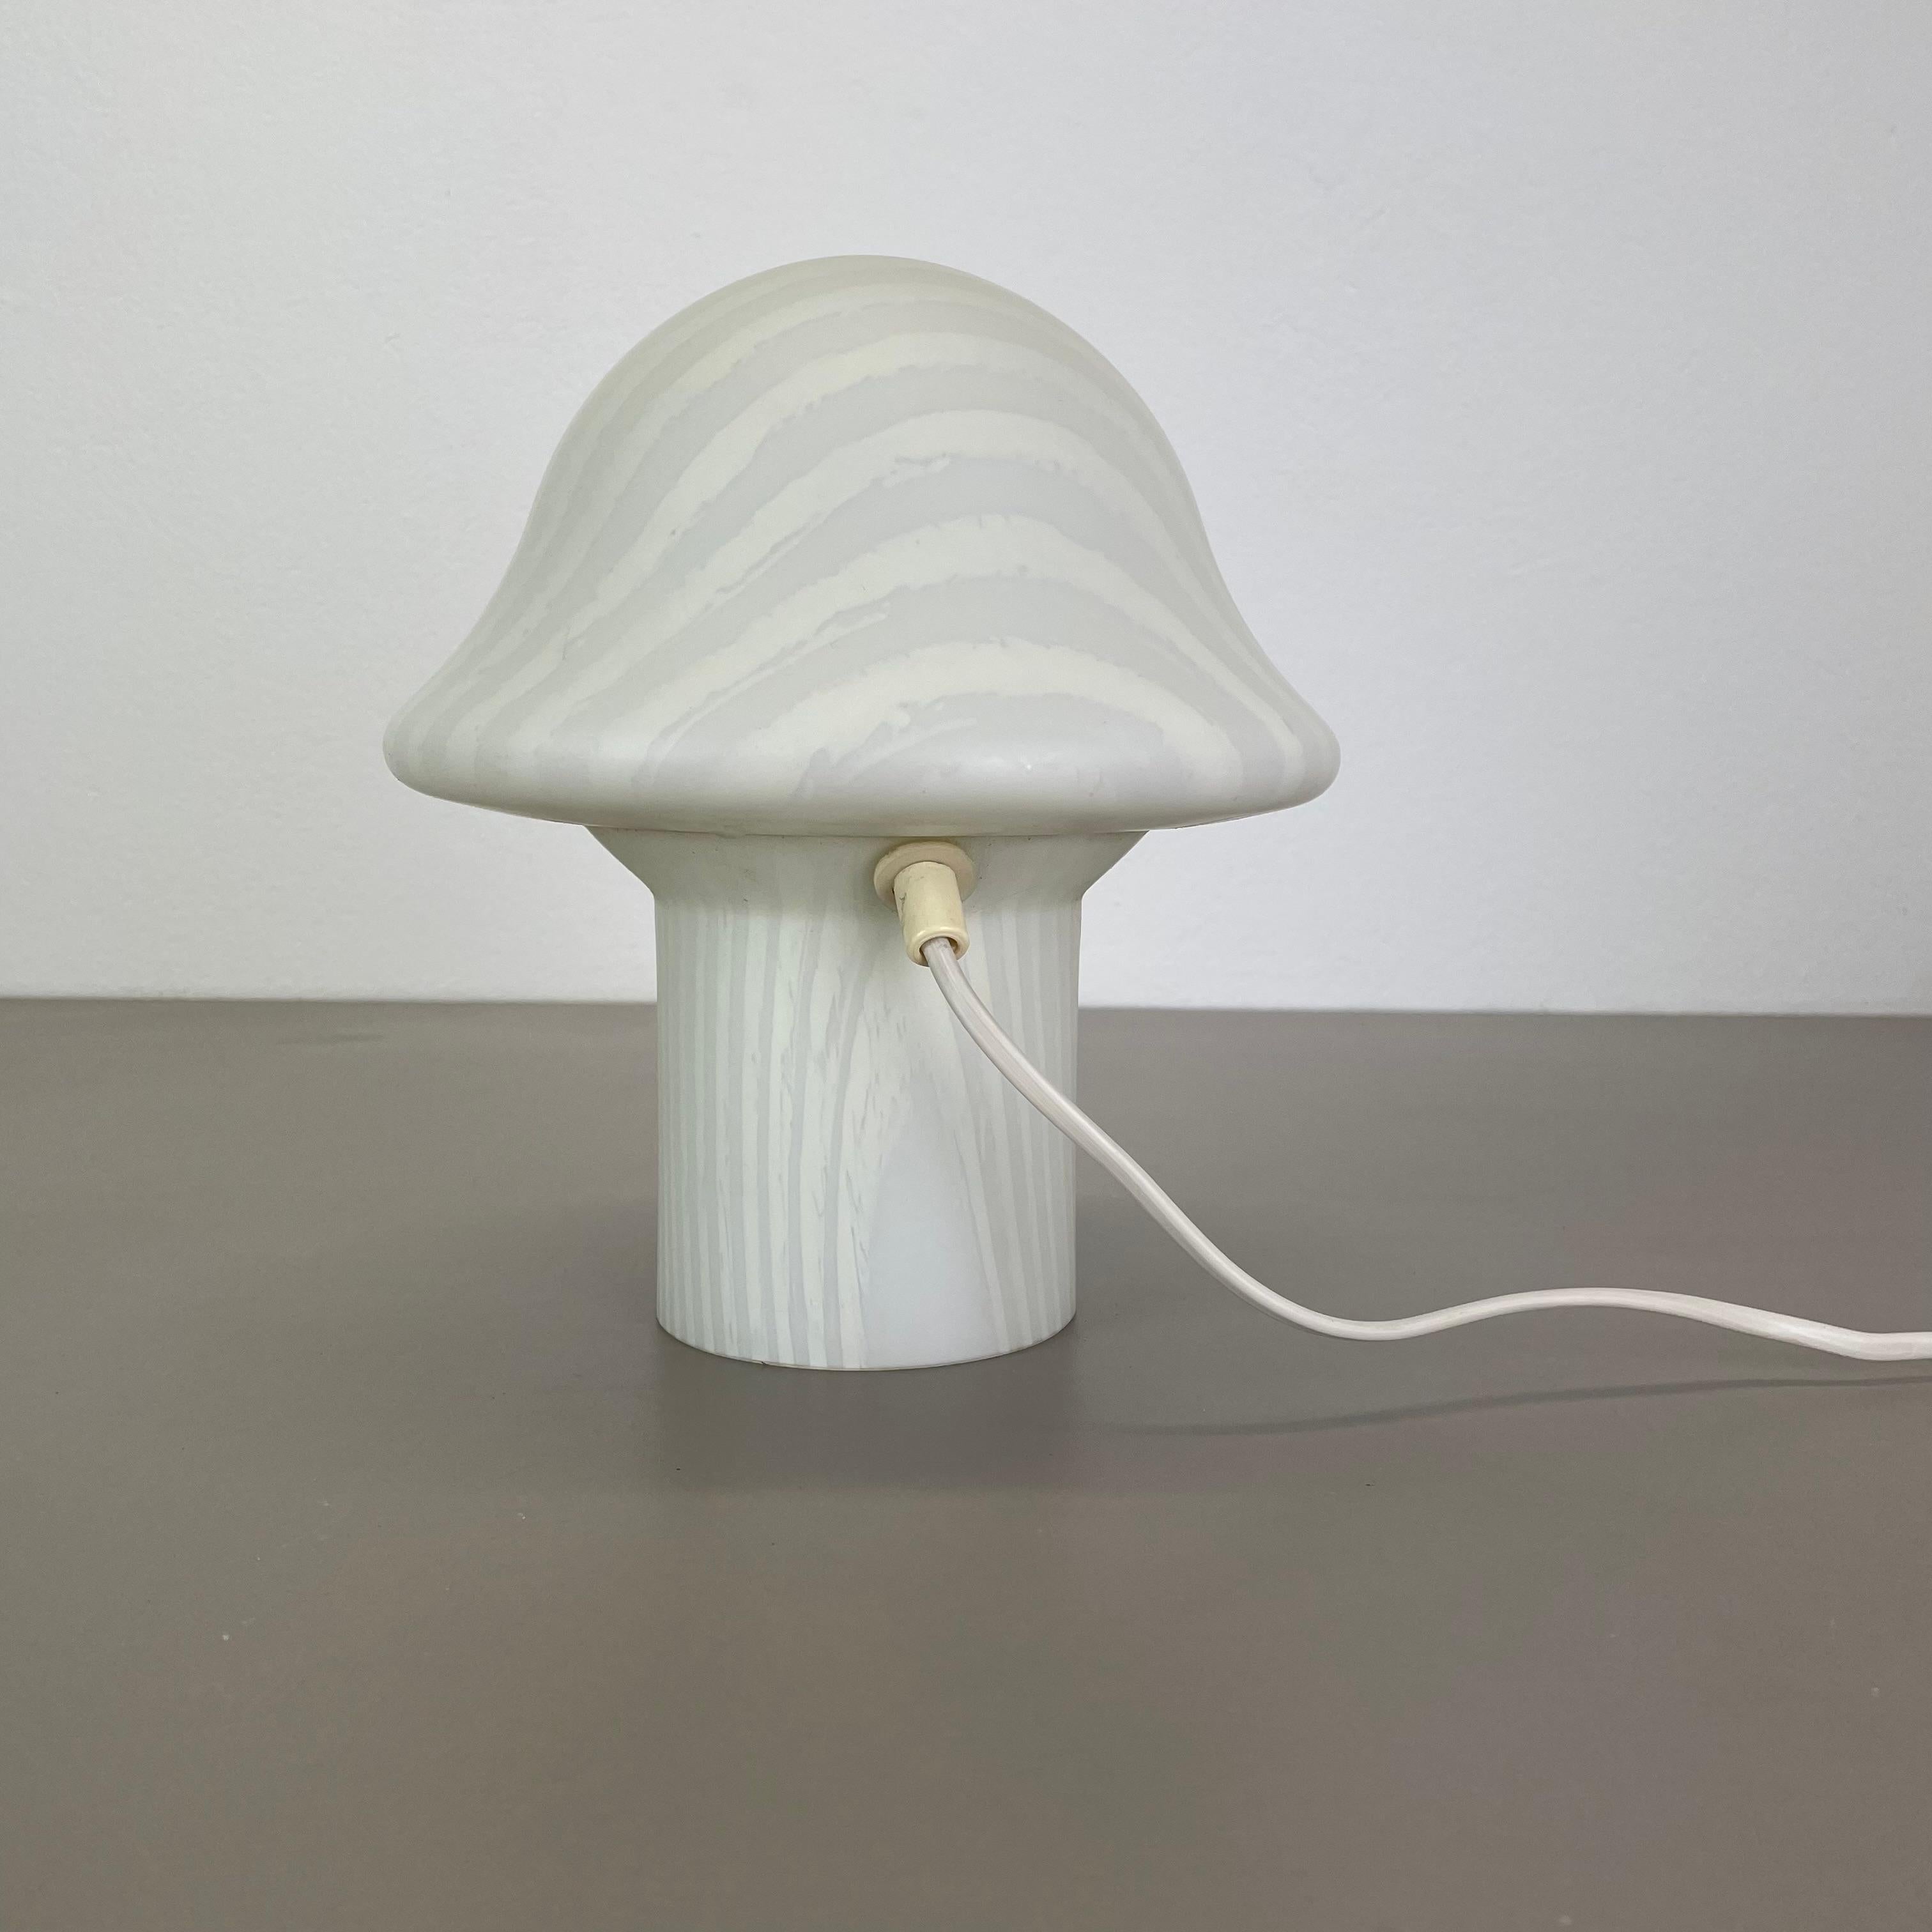 Original Glass Mushroom zebrano Desk Light by Peill & Putzler, Germany, 1970s For Sale 6